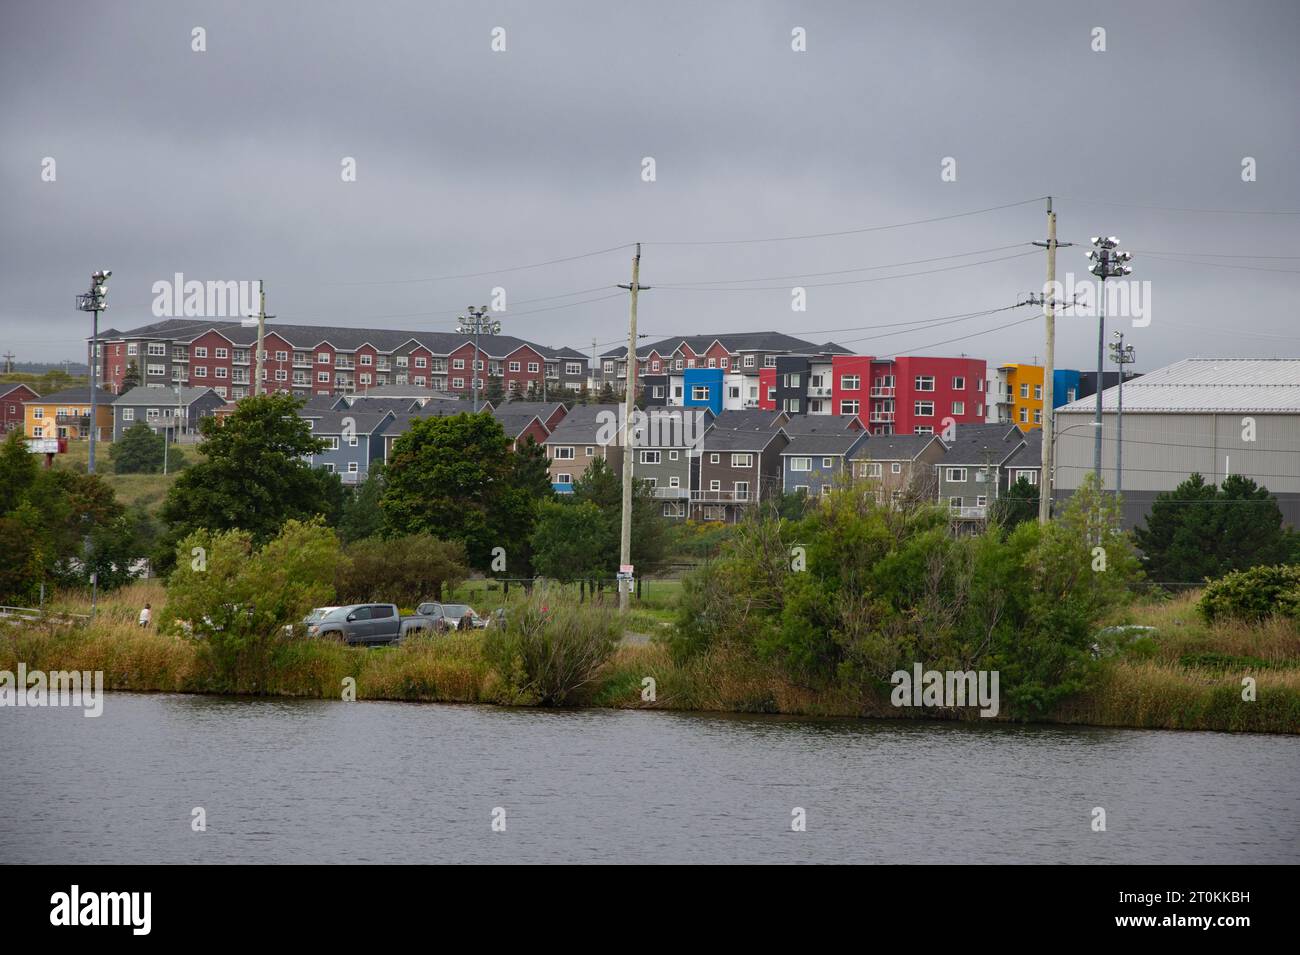 Immeubles d'appartements colorés donnant sur le lac Quidi Vidi à St. John's, Terre-Neuve-et-Labrador, Canada Banque D'Images